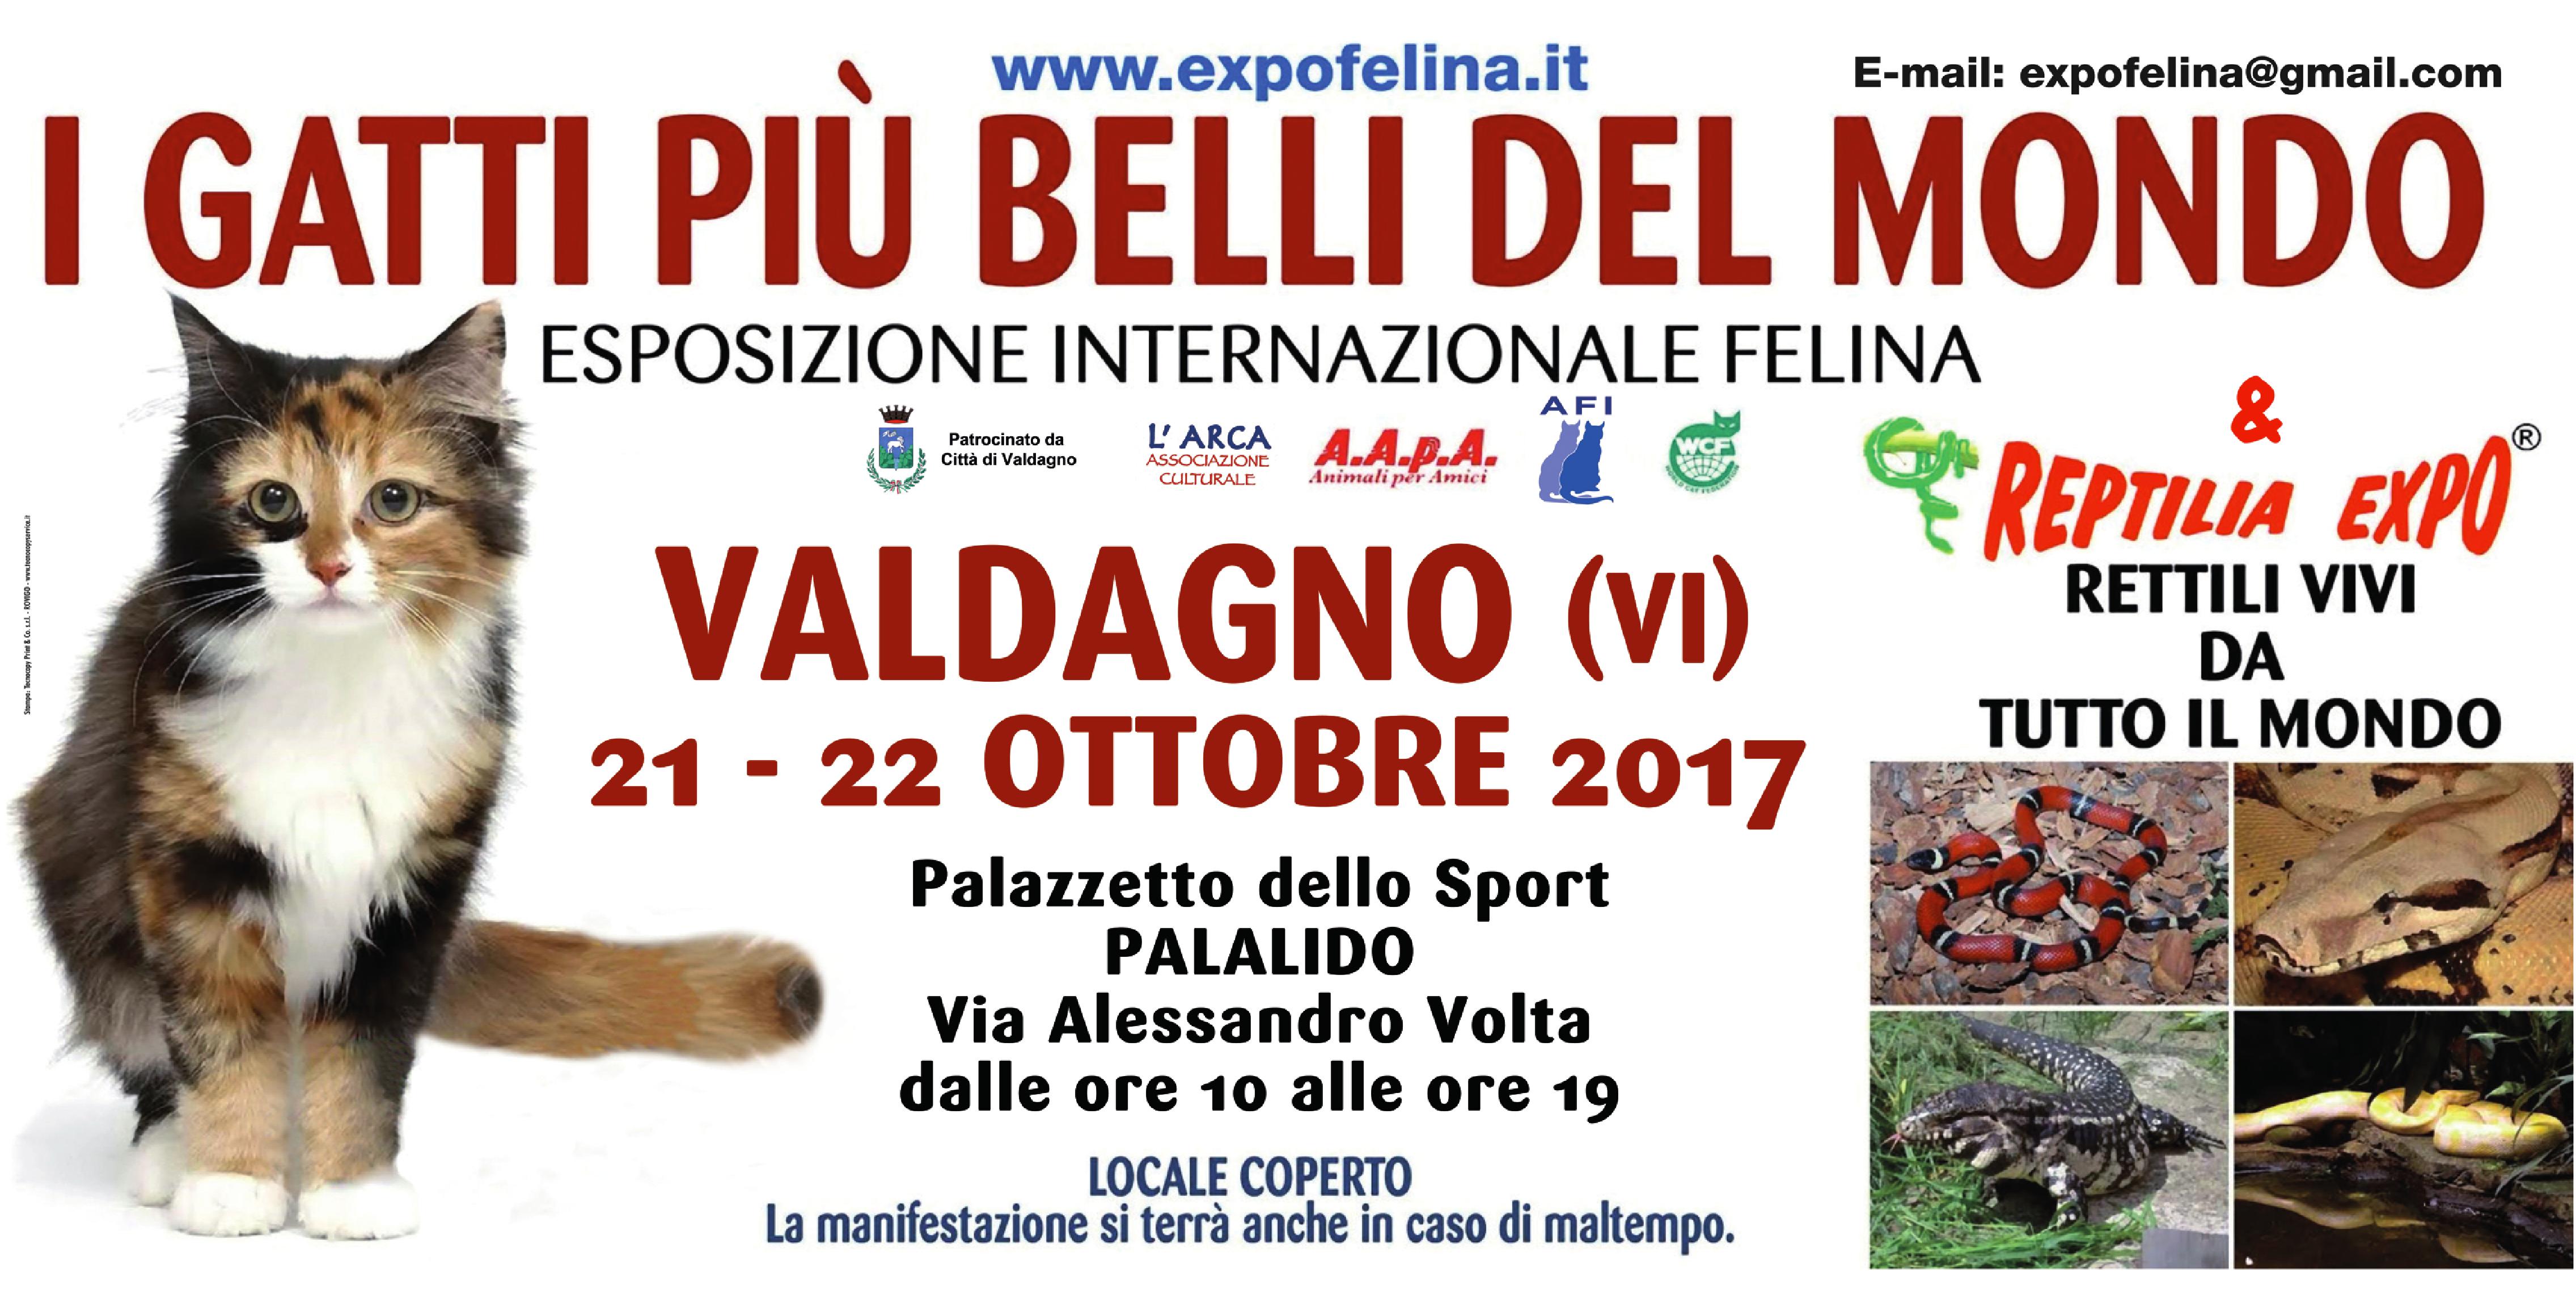 Foto 2 - I GATTI PIU' BELLI DEL MONDO al PalaLido di VALDAGNO - Esposizione Internazionale Felina